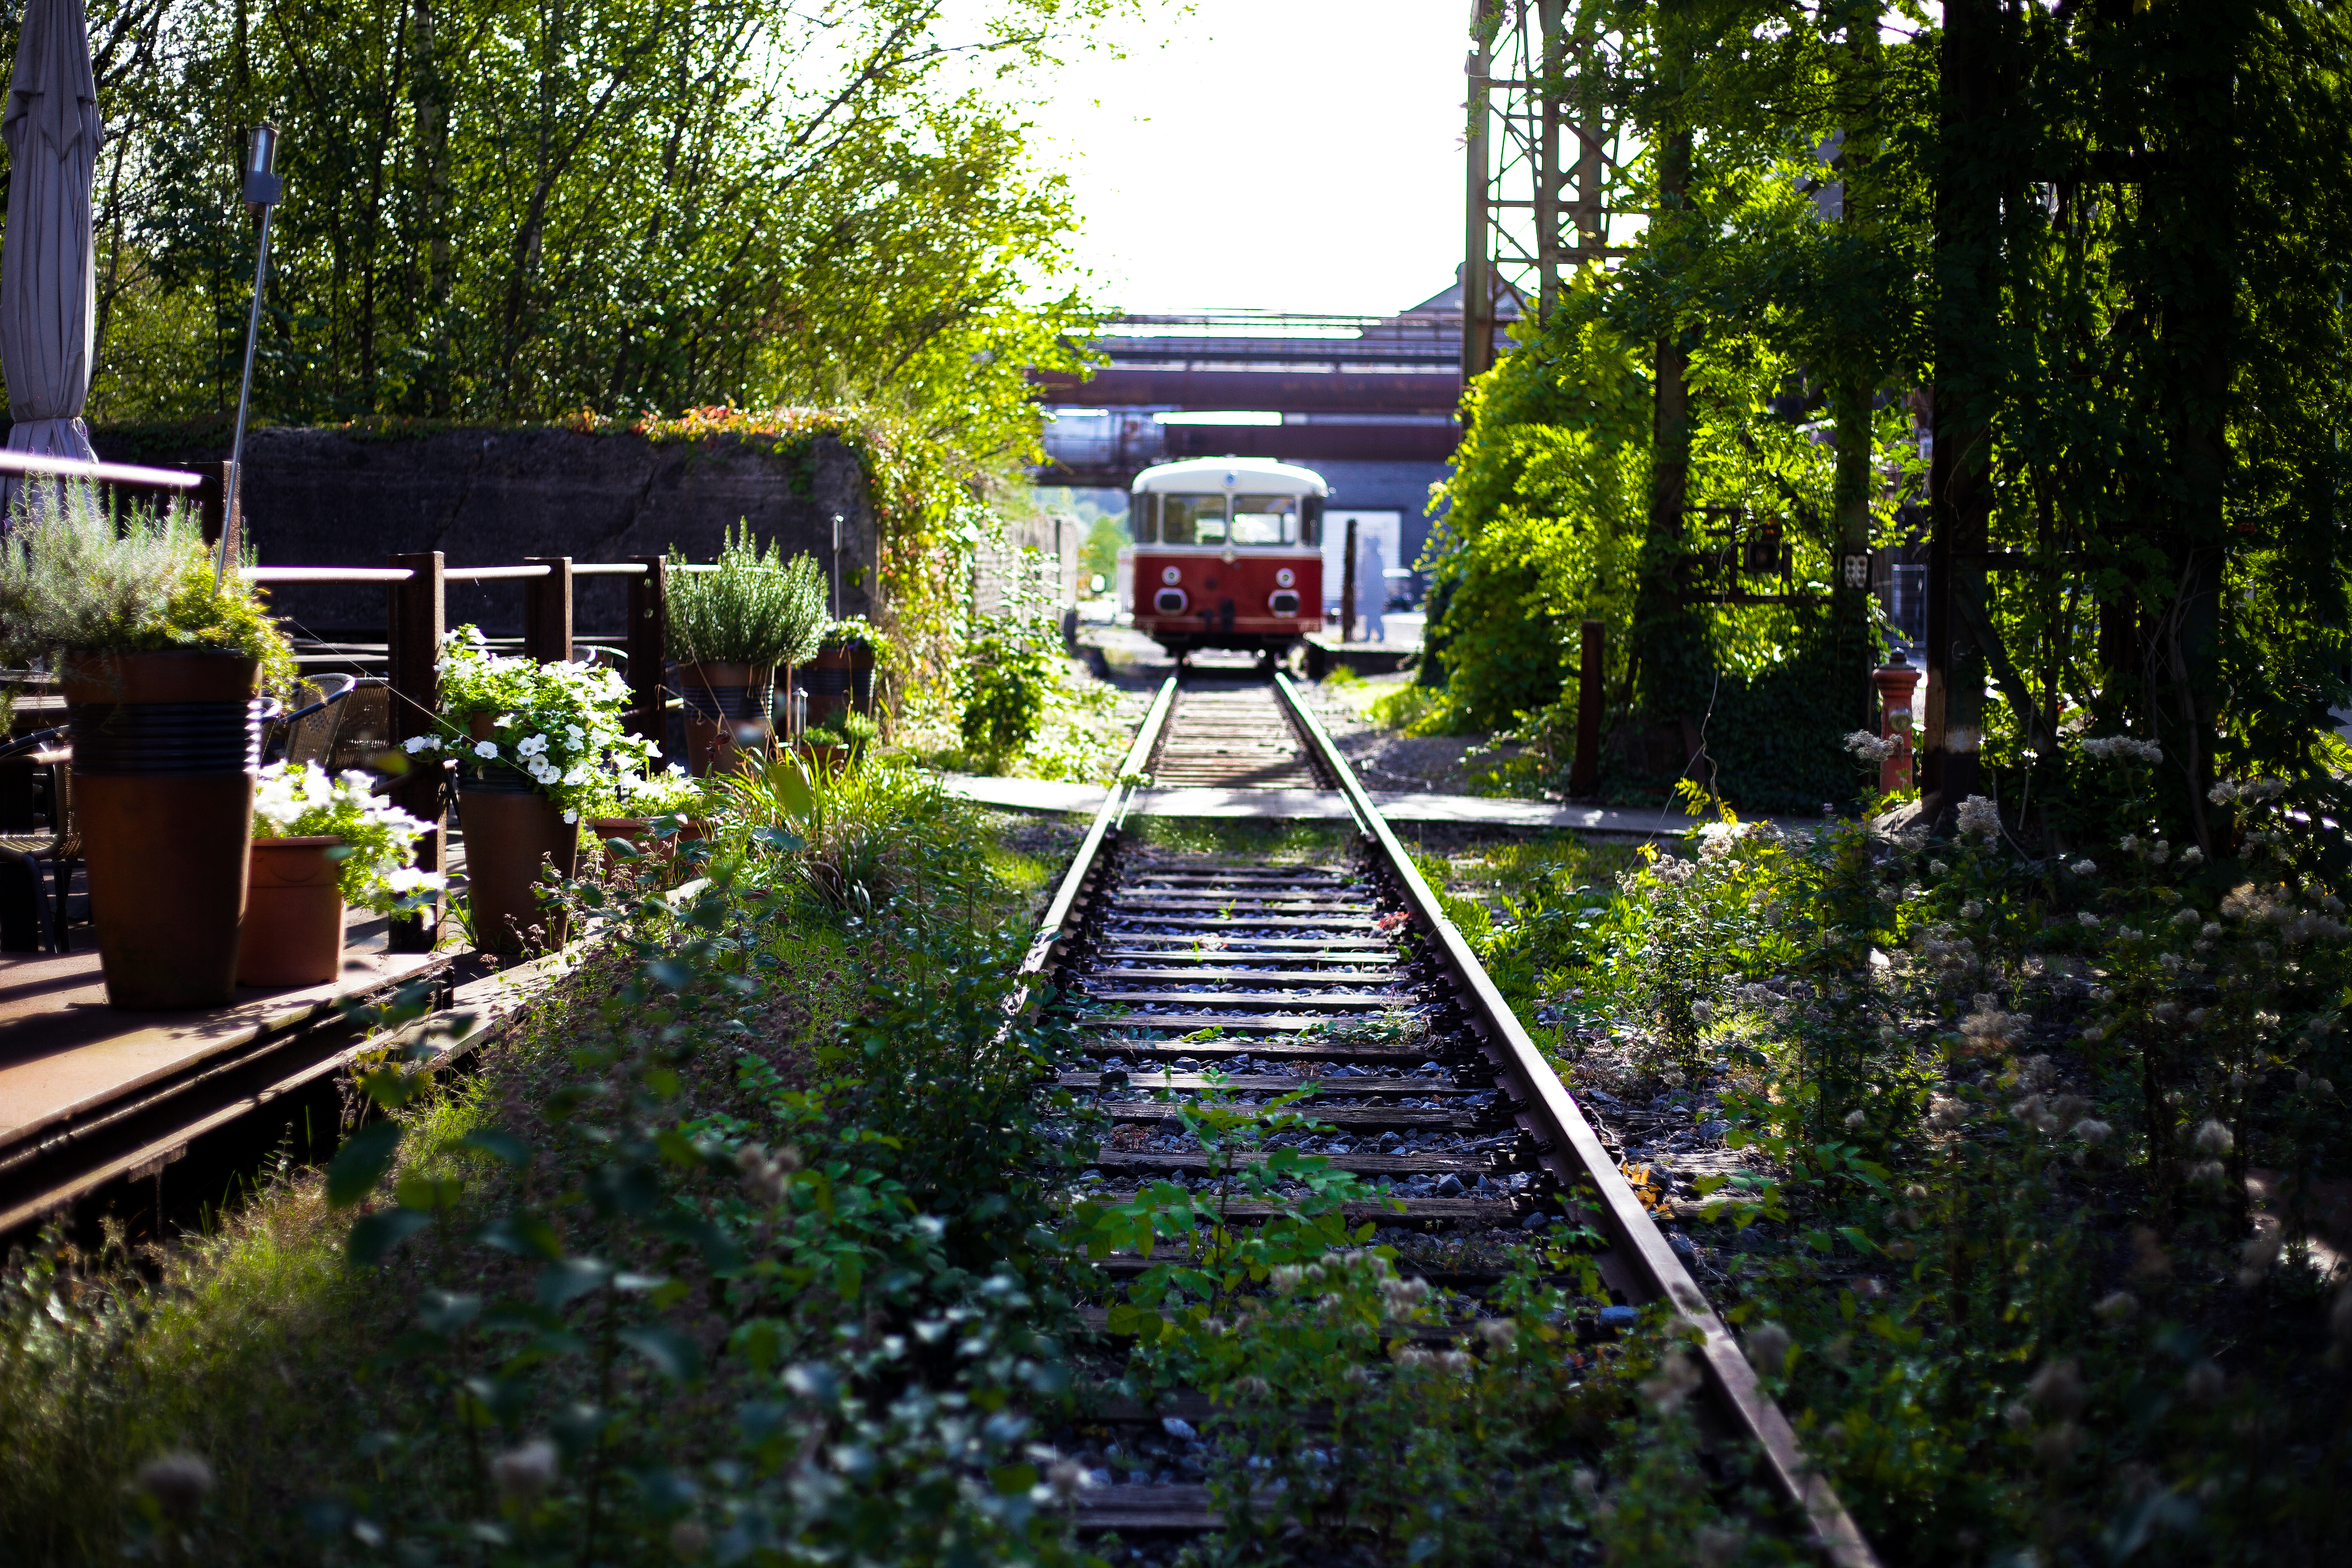 Ein alter Eisenbahnwaggon fährt auf den Gleisen durch die begrünte Außenanlage des LWL-Industriemuseums Henrichshütte in Hattingen. © Tourismus NRW e.V.